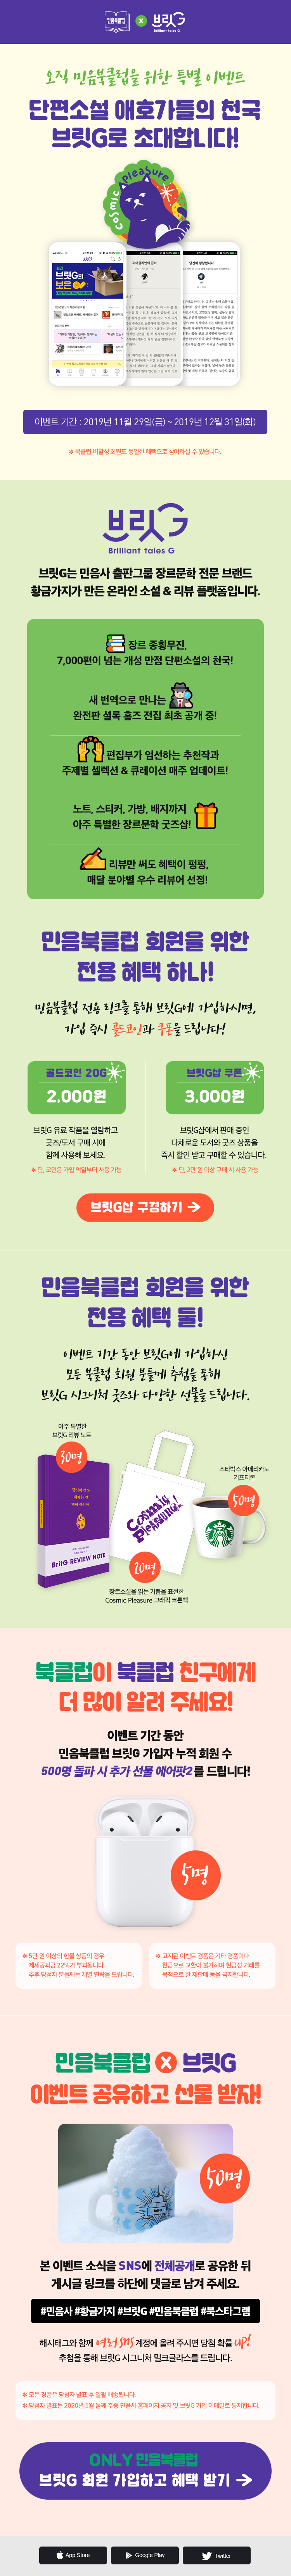 민음북클럽브릿G이벤트_홈페이지용